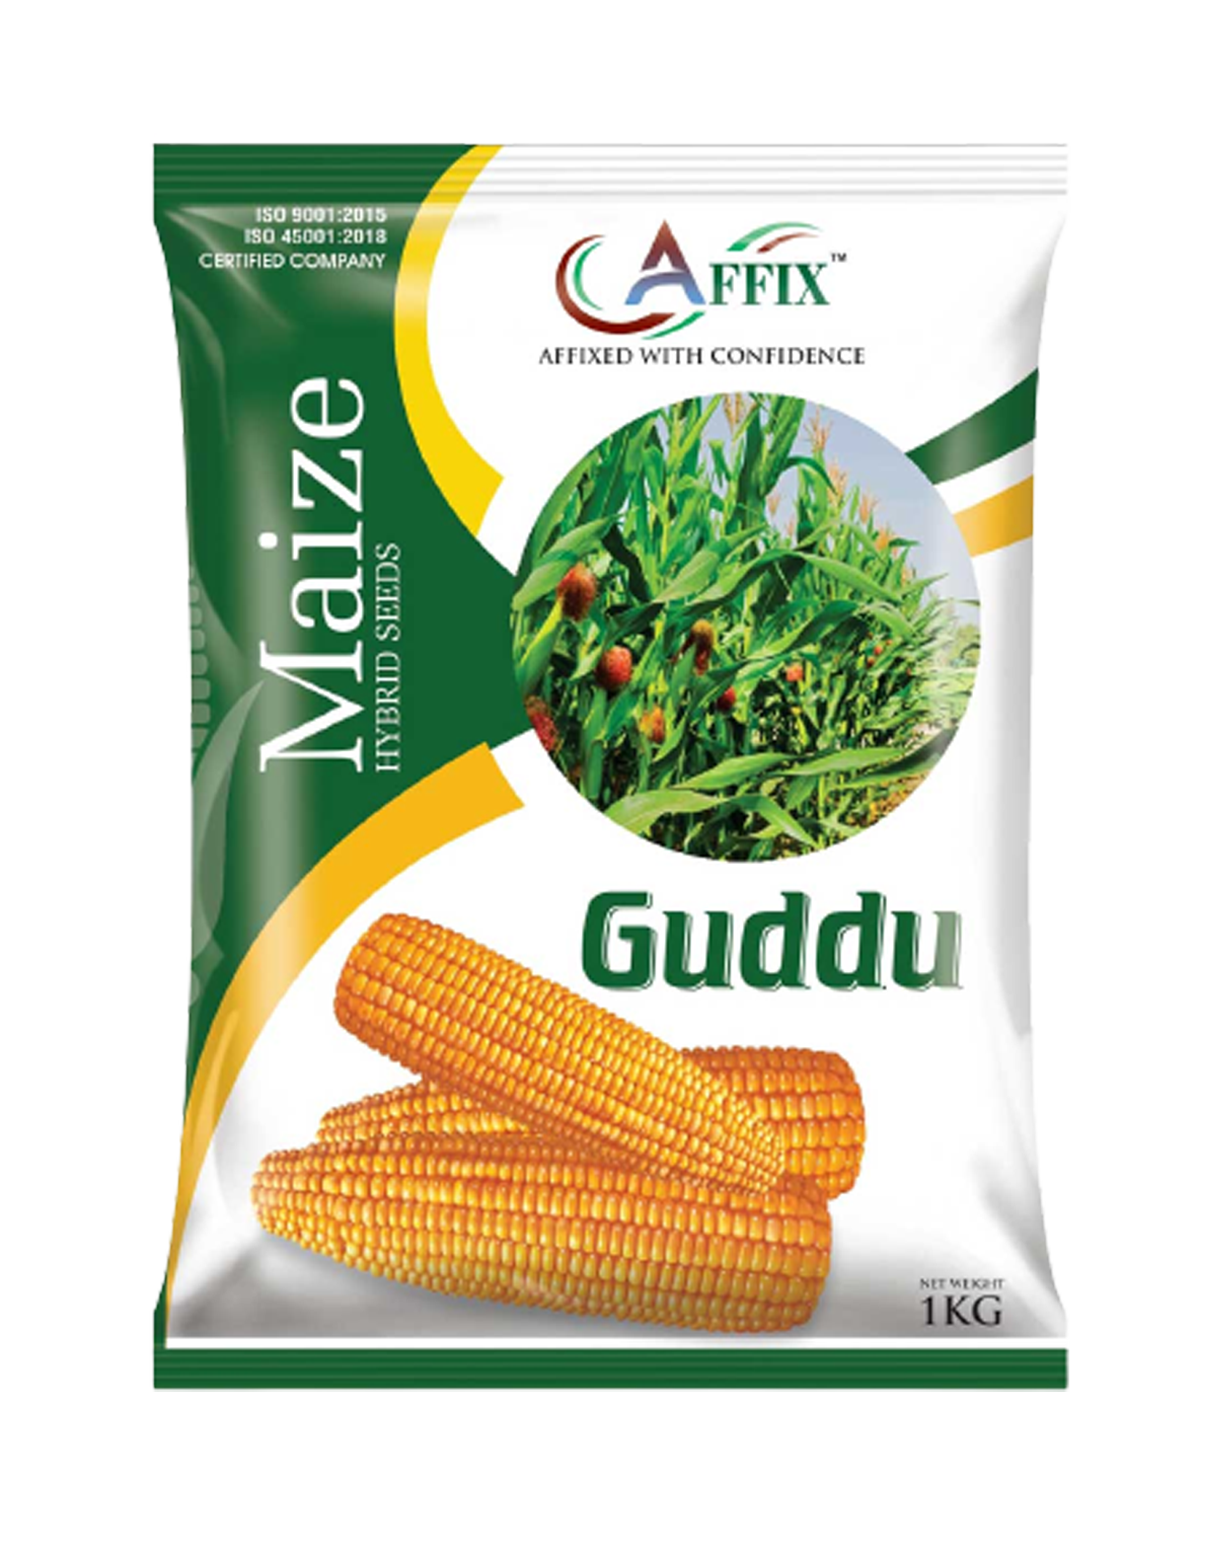 Guddu (Maize)